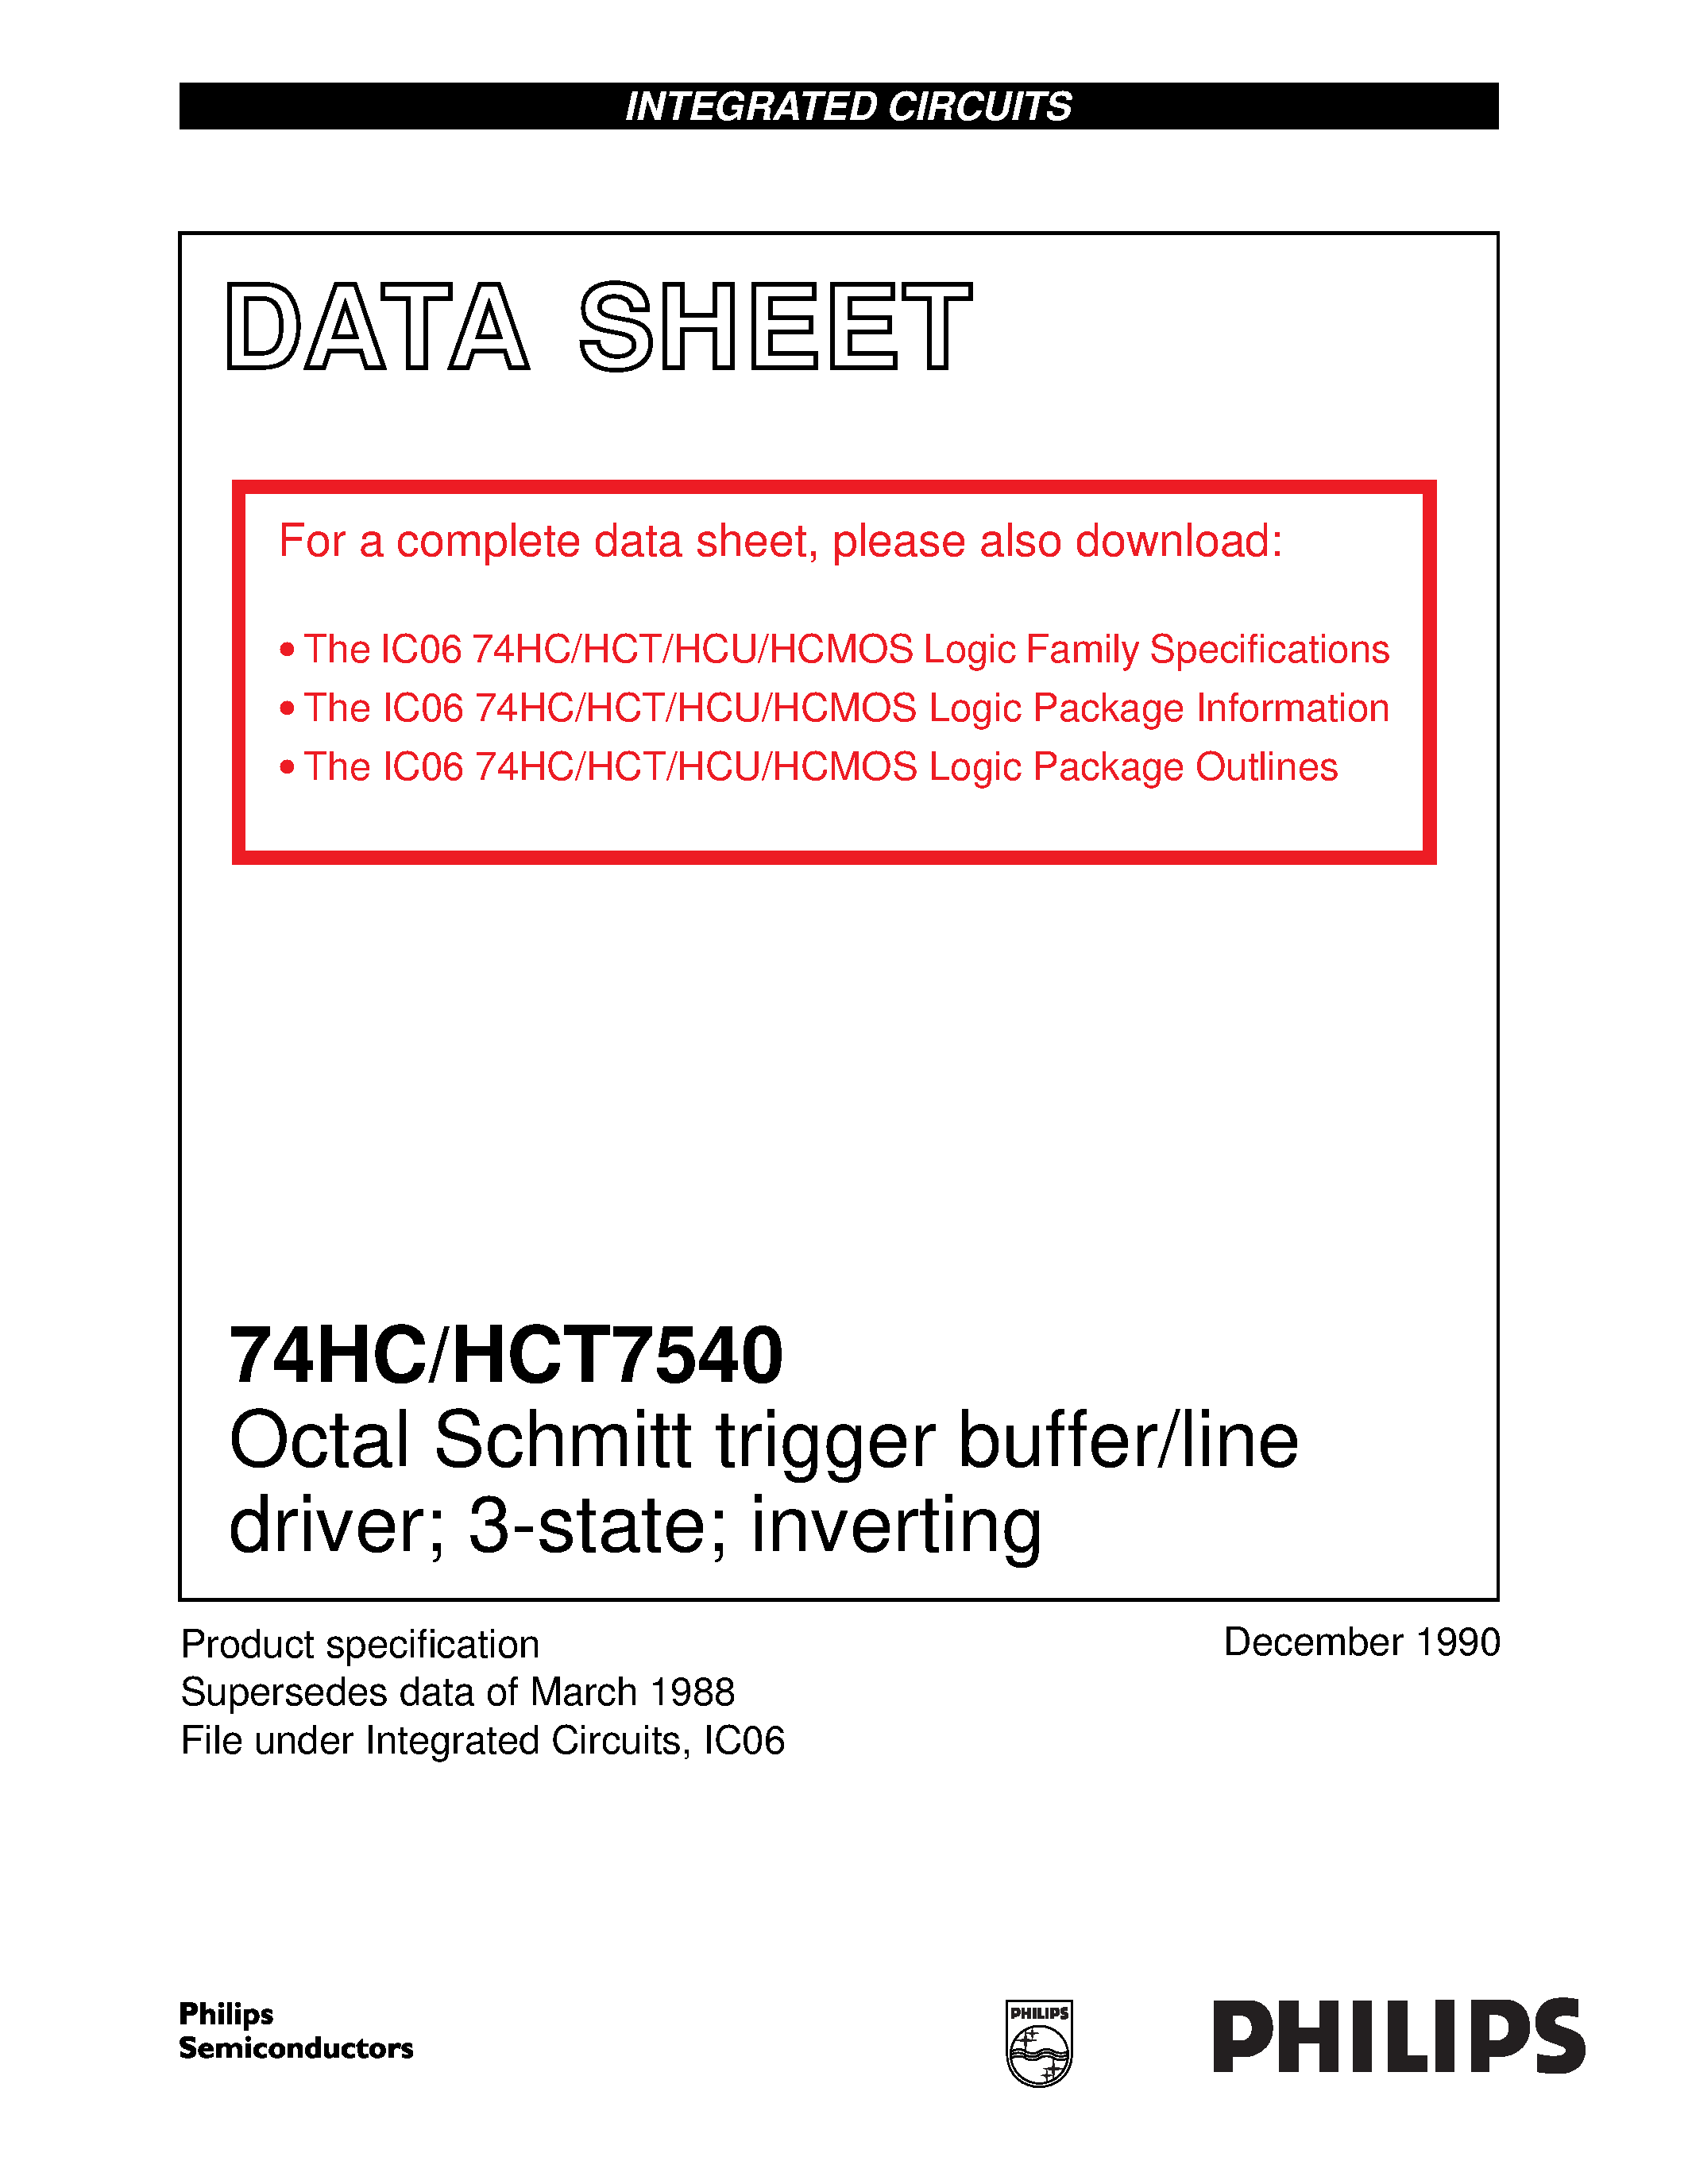 Datasheet 74HCT7540 - Octal Schmitt trigger buffer/line driver; 3-state; inverting page 1